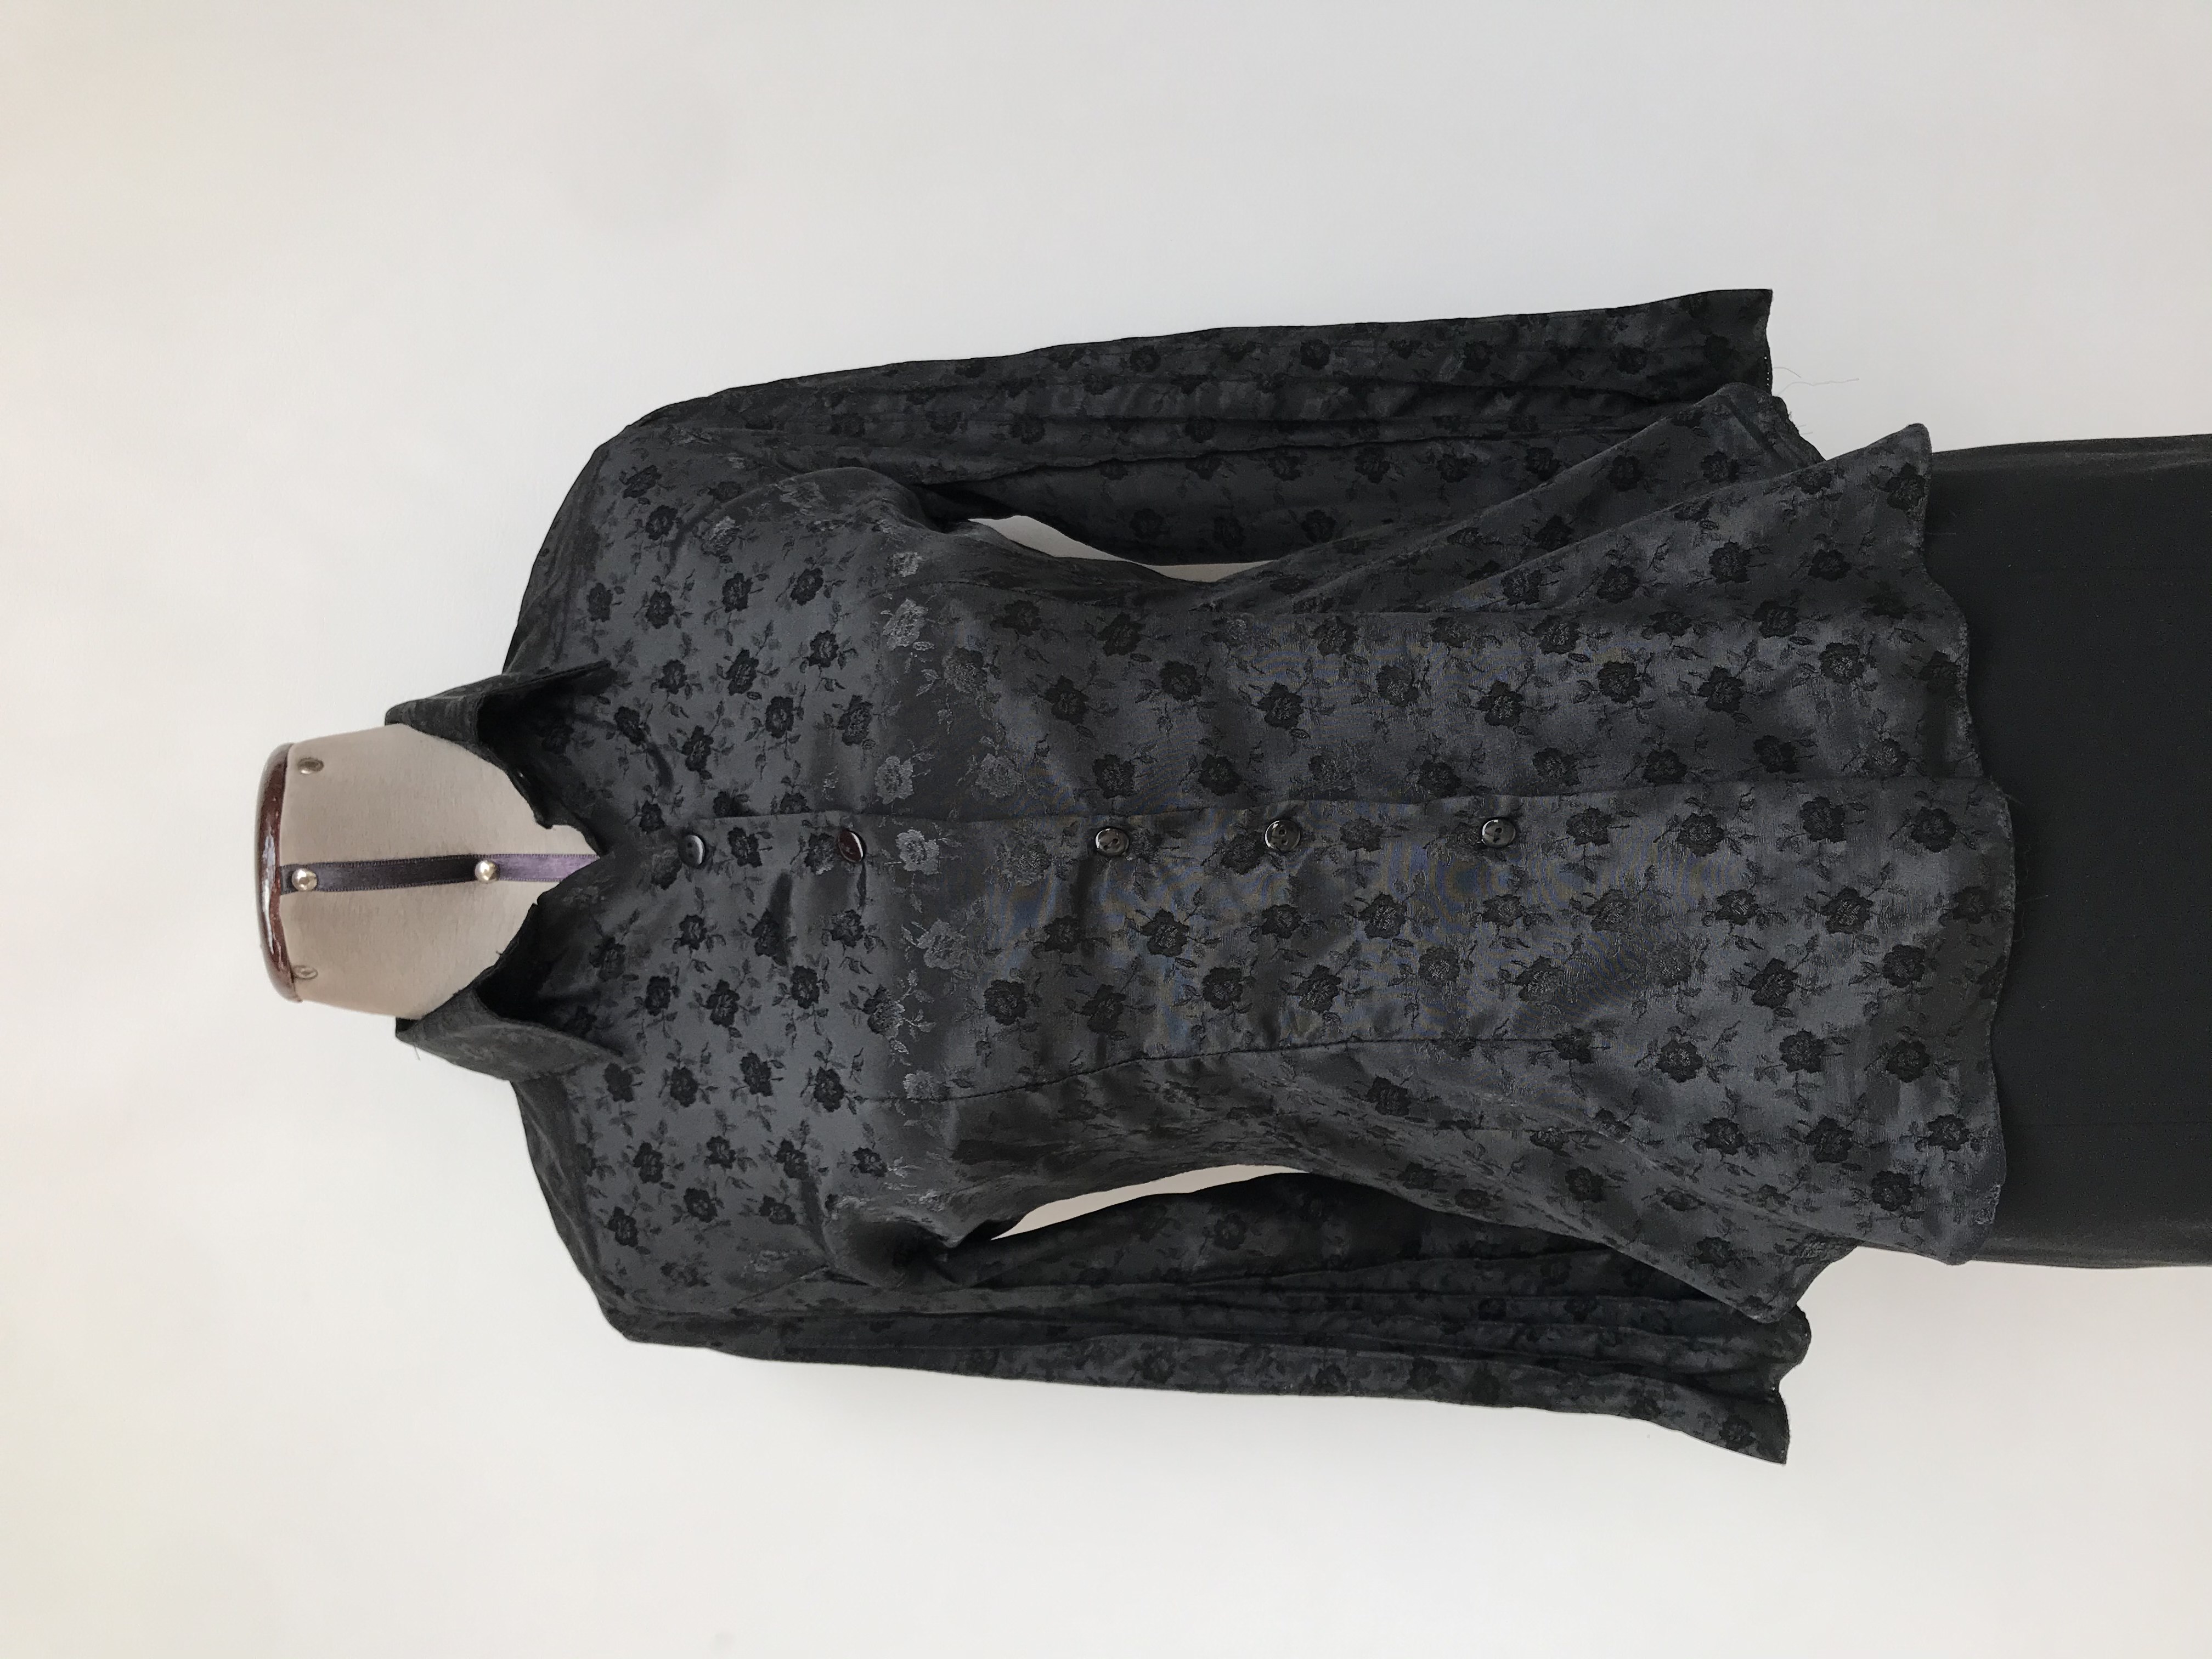 Blusa negra con brocado de flores al tono, camisera con botones, pinzas y costuras en relieve en mangas
Talla S